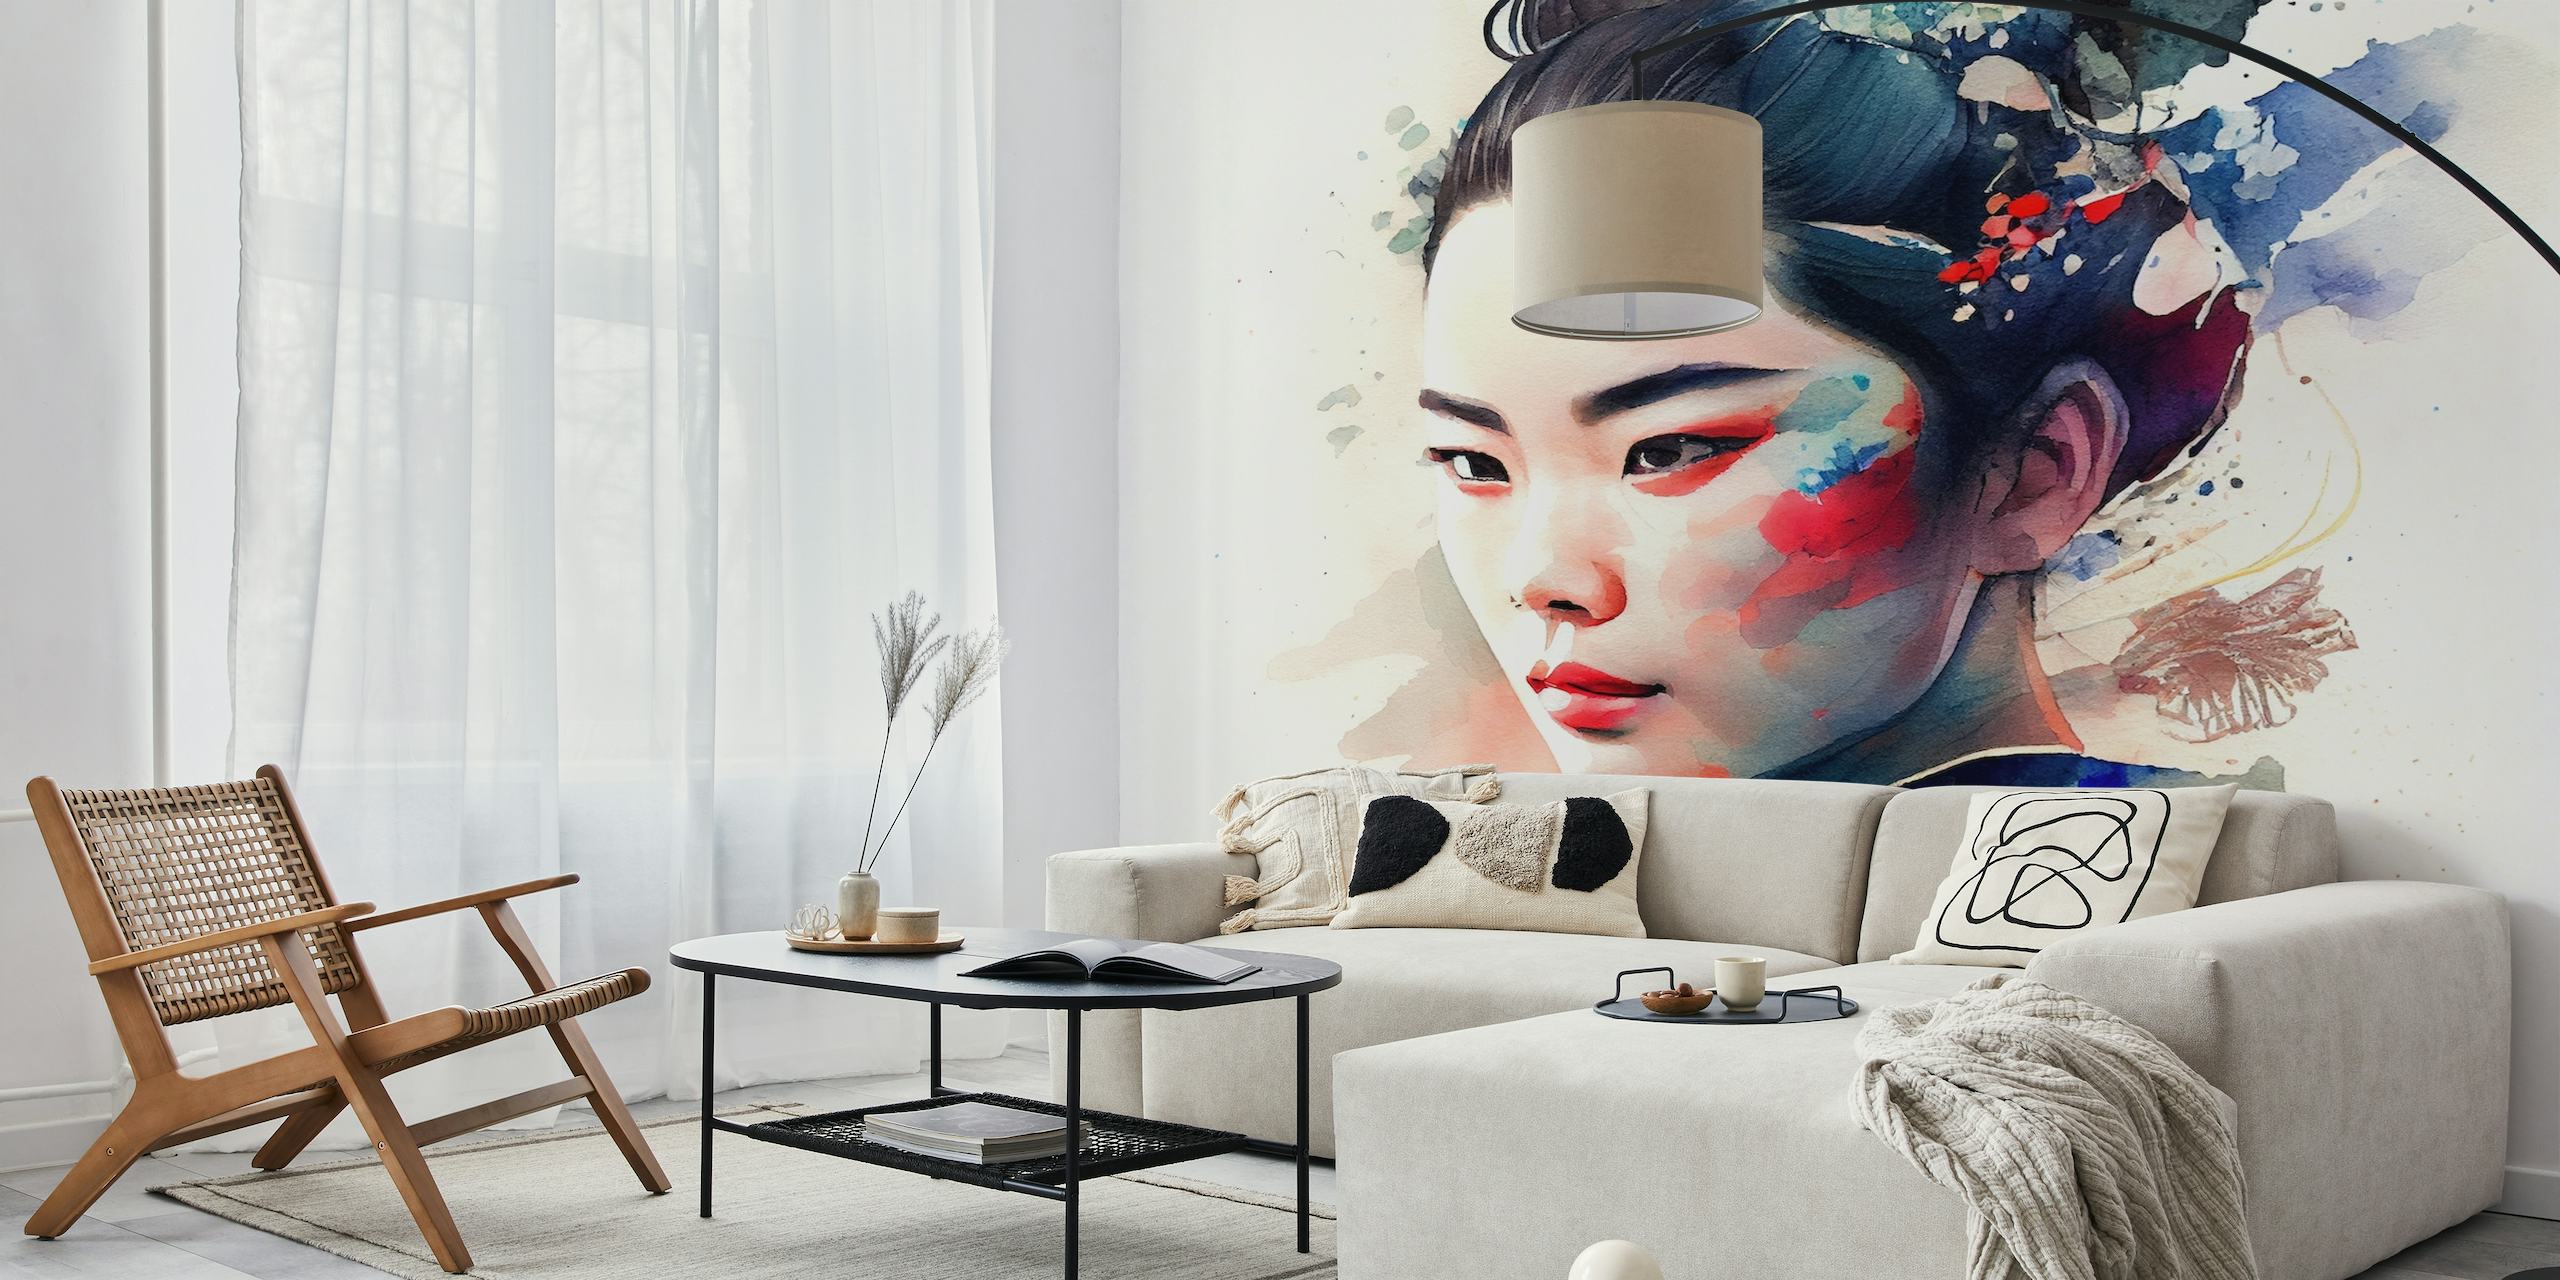 Akvarel vægmaleri af en moderne Geisha i en rolig positur med en levende blanding af farver.